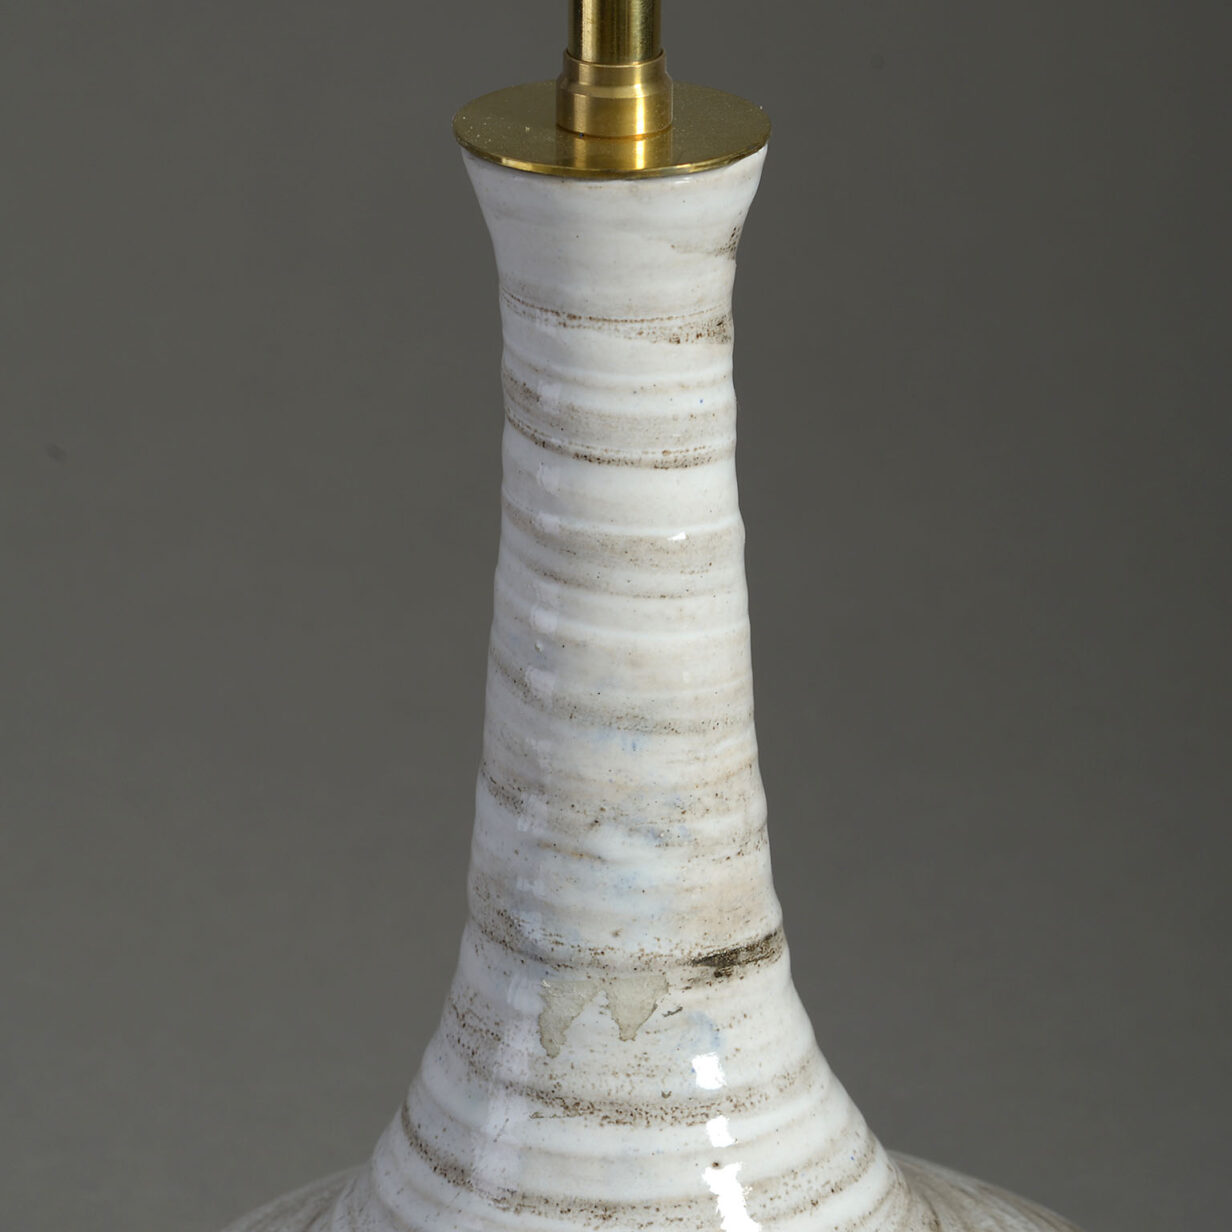 Pottery bottle vase lamp